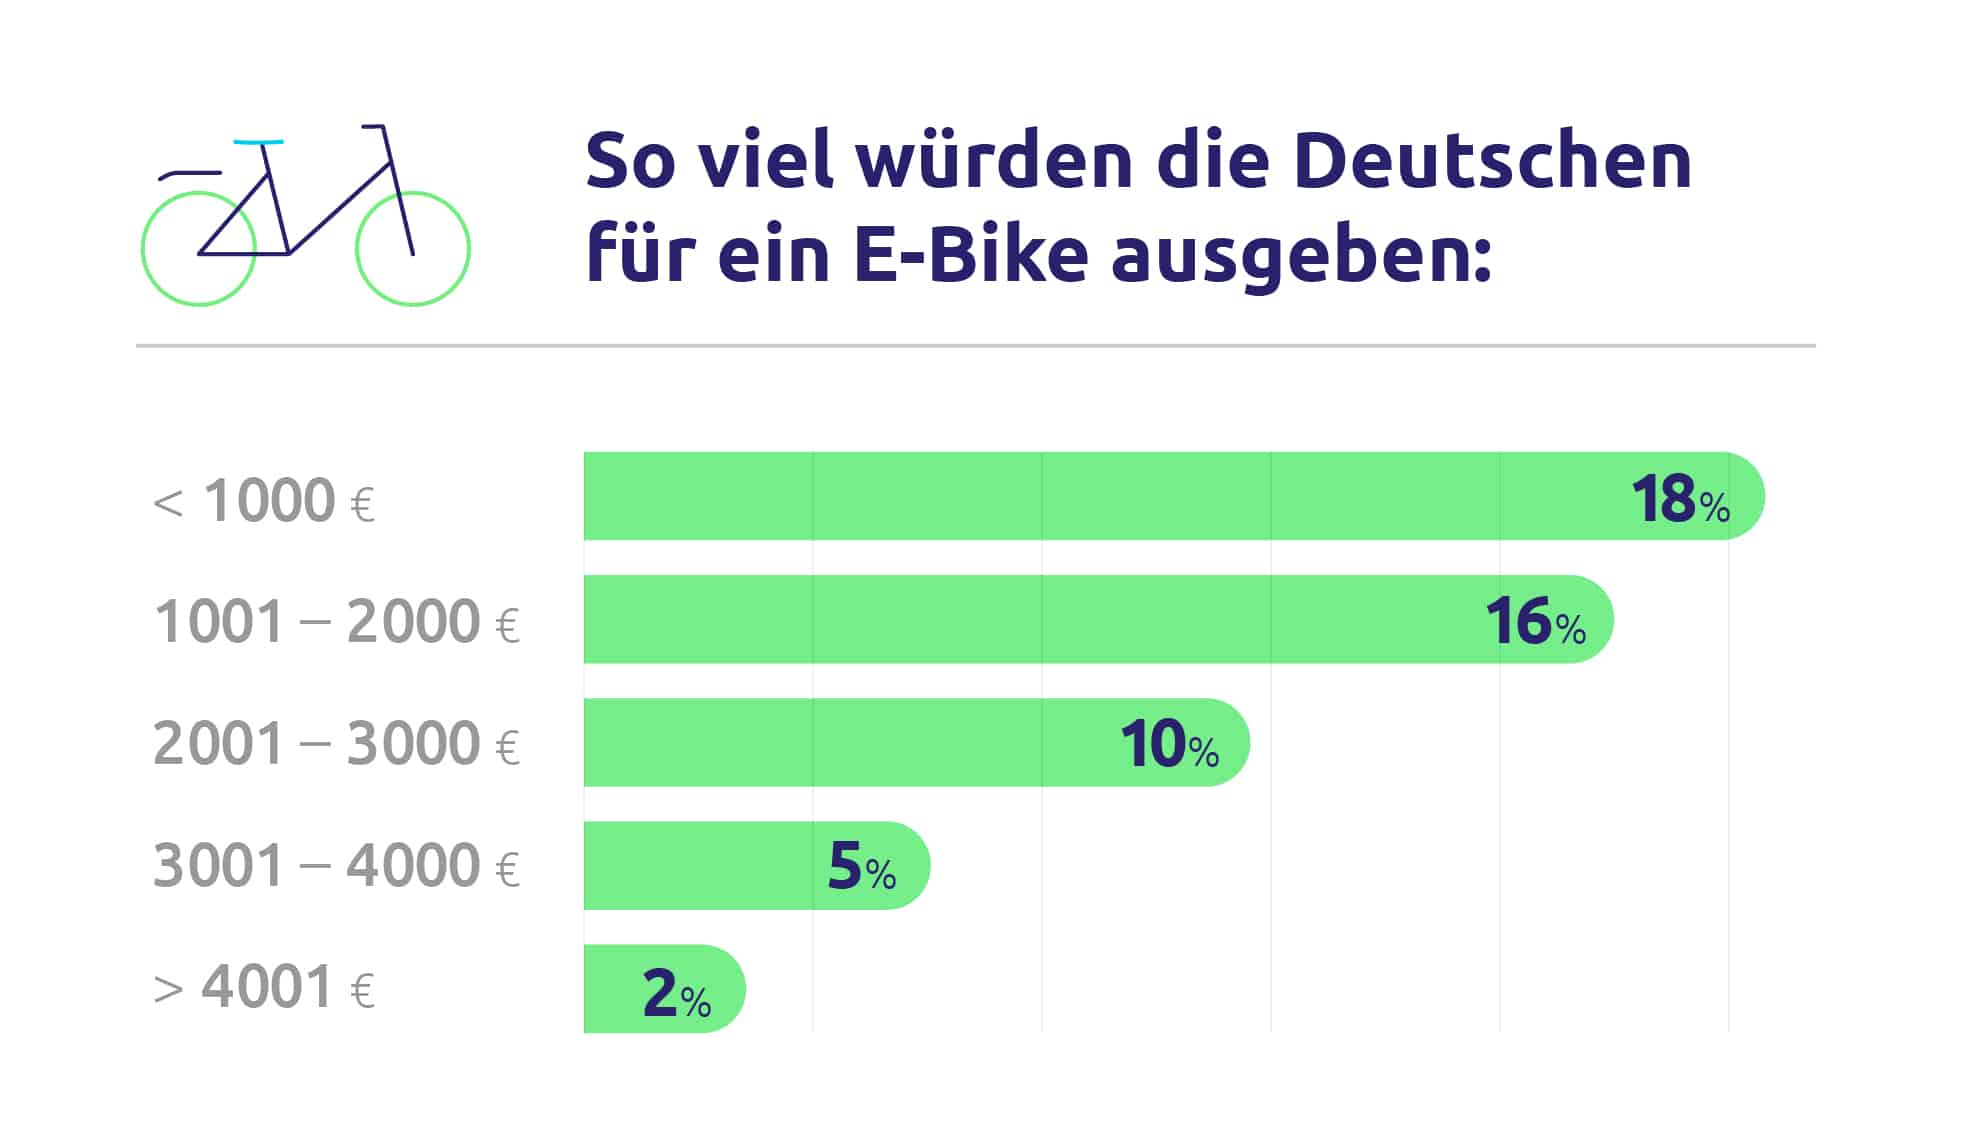 City E-Bike | E-Lastenrad | E-Mountainbike - Upway So viel wuerden die Befragten fuer ein E Bike ausgeben - eBikeNews